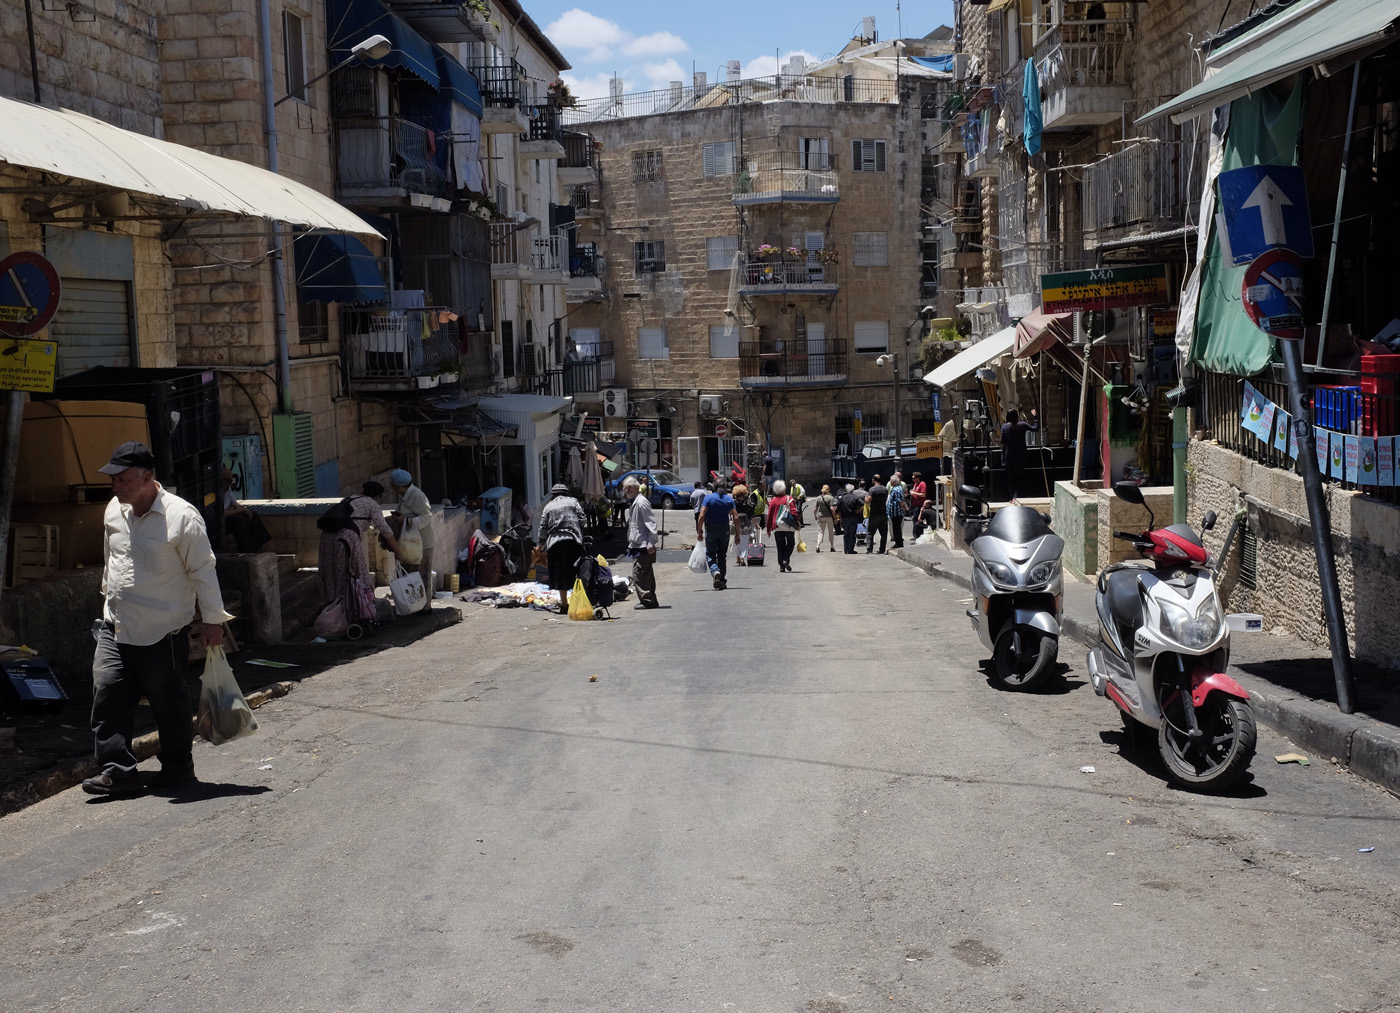 On the Streets of Jerusalem